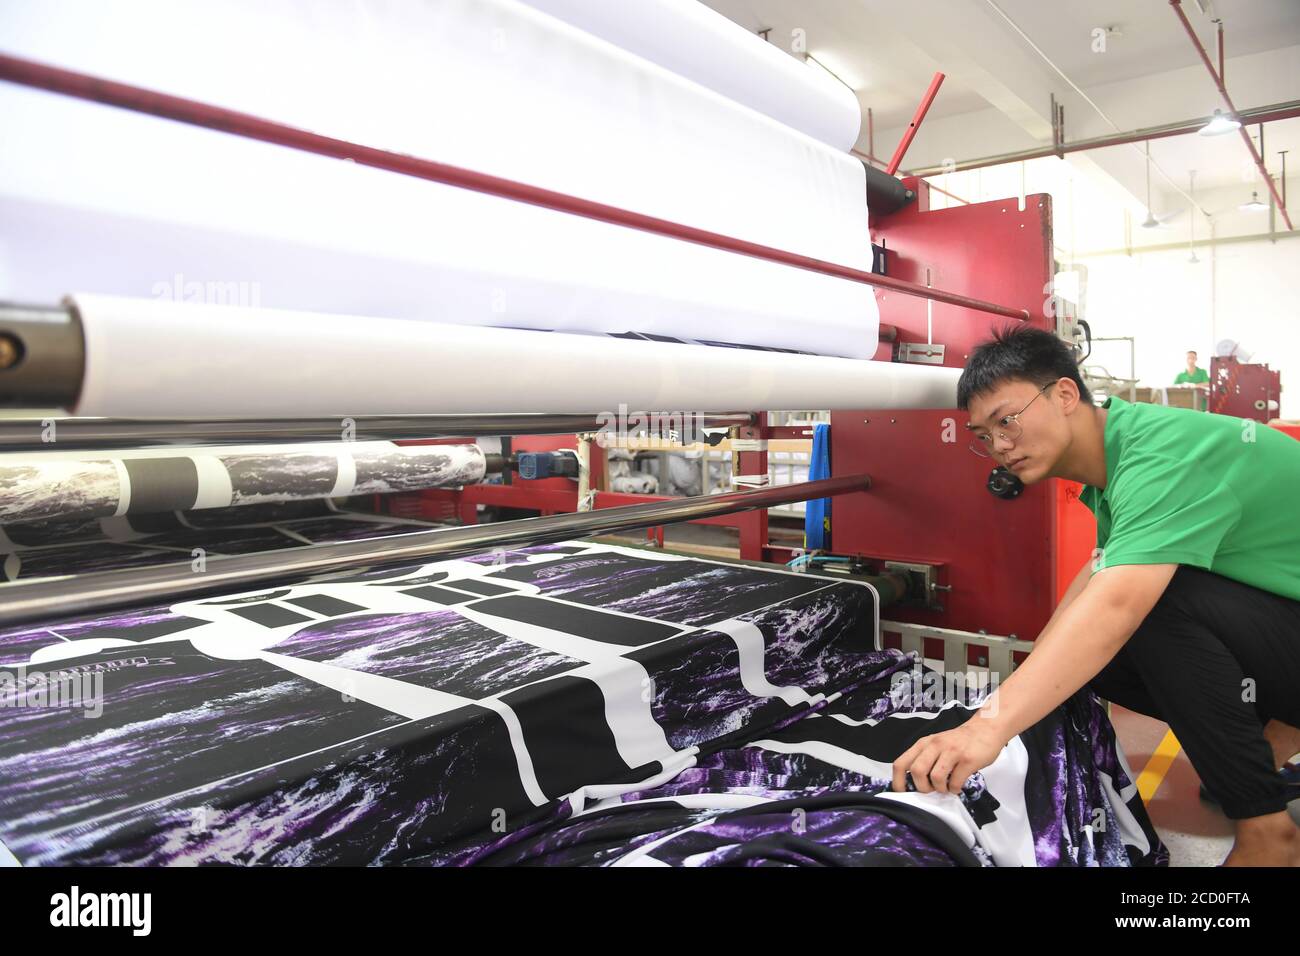 Shishi, Chinas Provinz Fujian. August 2020. Ein Arbeiter betreibt eine Maschine, um Muster auf Kleidung in einem Bekleidungsunternehmen in Shishi, südöstlich der Provinz Fujian in China, aufzudrucken, 25. August 2020. Die lokalen Behörden von Shishi, wo viele Textilunternehmen ansässig sind, haben einige günstige Maßnahmen durchgeführt, um die Kosten zu senken und den Unternehmen zu helfen, die Produktions- und Vermarktungsstrategien anzupassen. Die Produktionskapazität der Textilunternehmen hat sich stark verbessert. Quelle: Song Weiwei/Xinhua/Alamy Live News Stockfoto